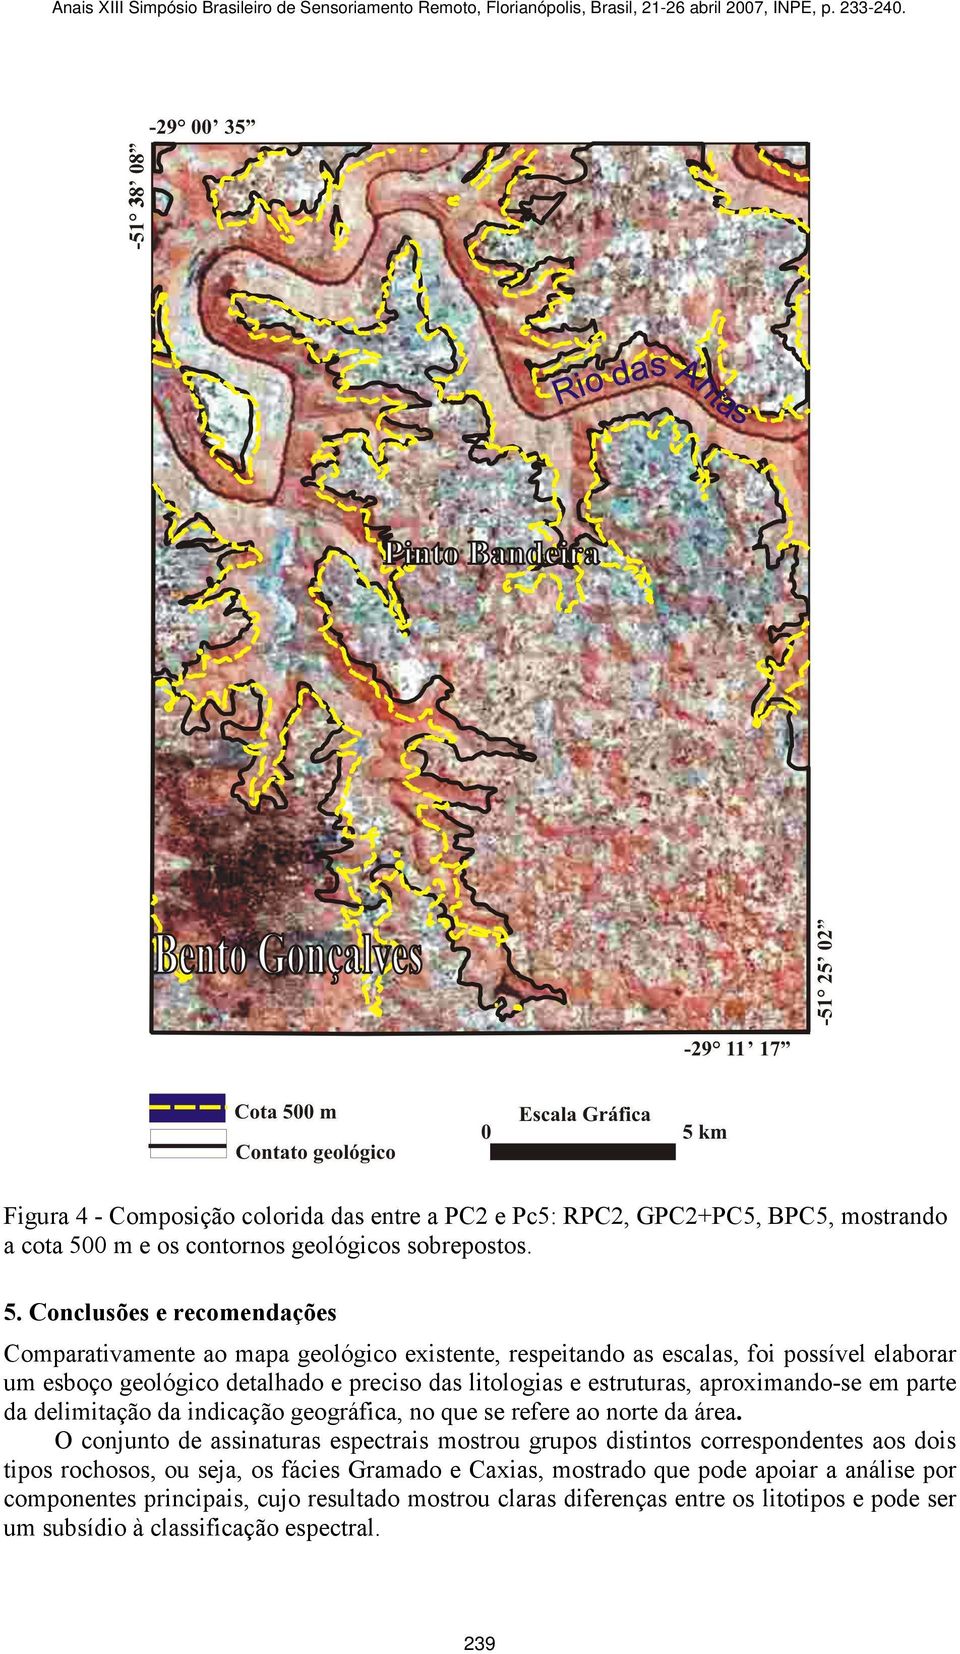 Conclusões e recomendações Comparativamente ao mapa geológico existente, respeitando as escalas, foi possível elaborar um esboço geológico detalhado e preciso das litologias e